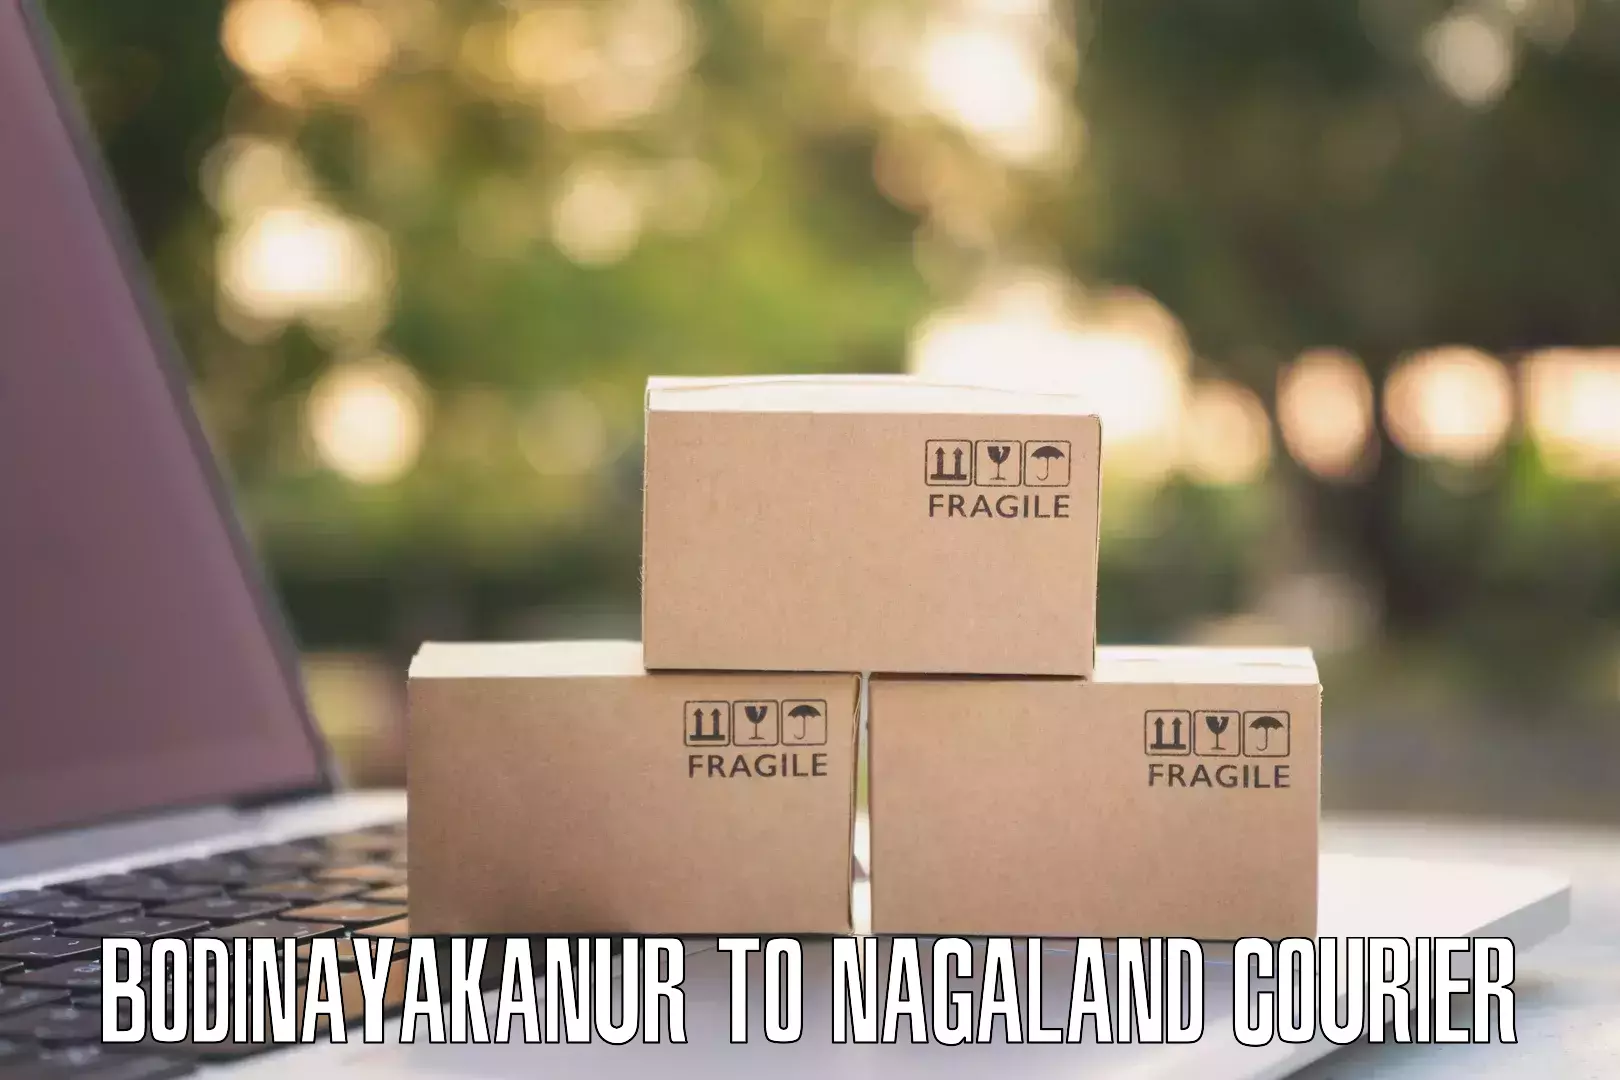 Express courier capabilities Bodinayakanur to Nagaland